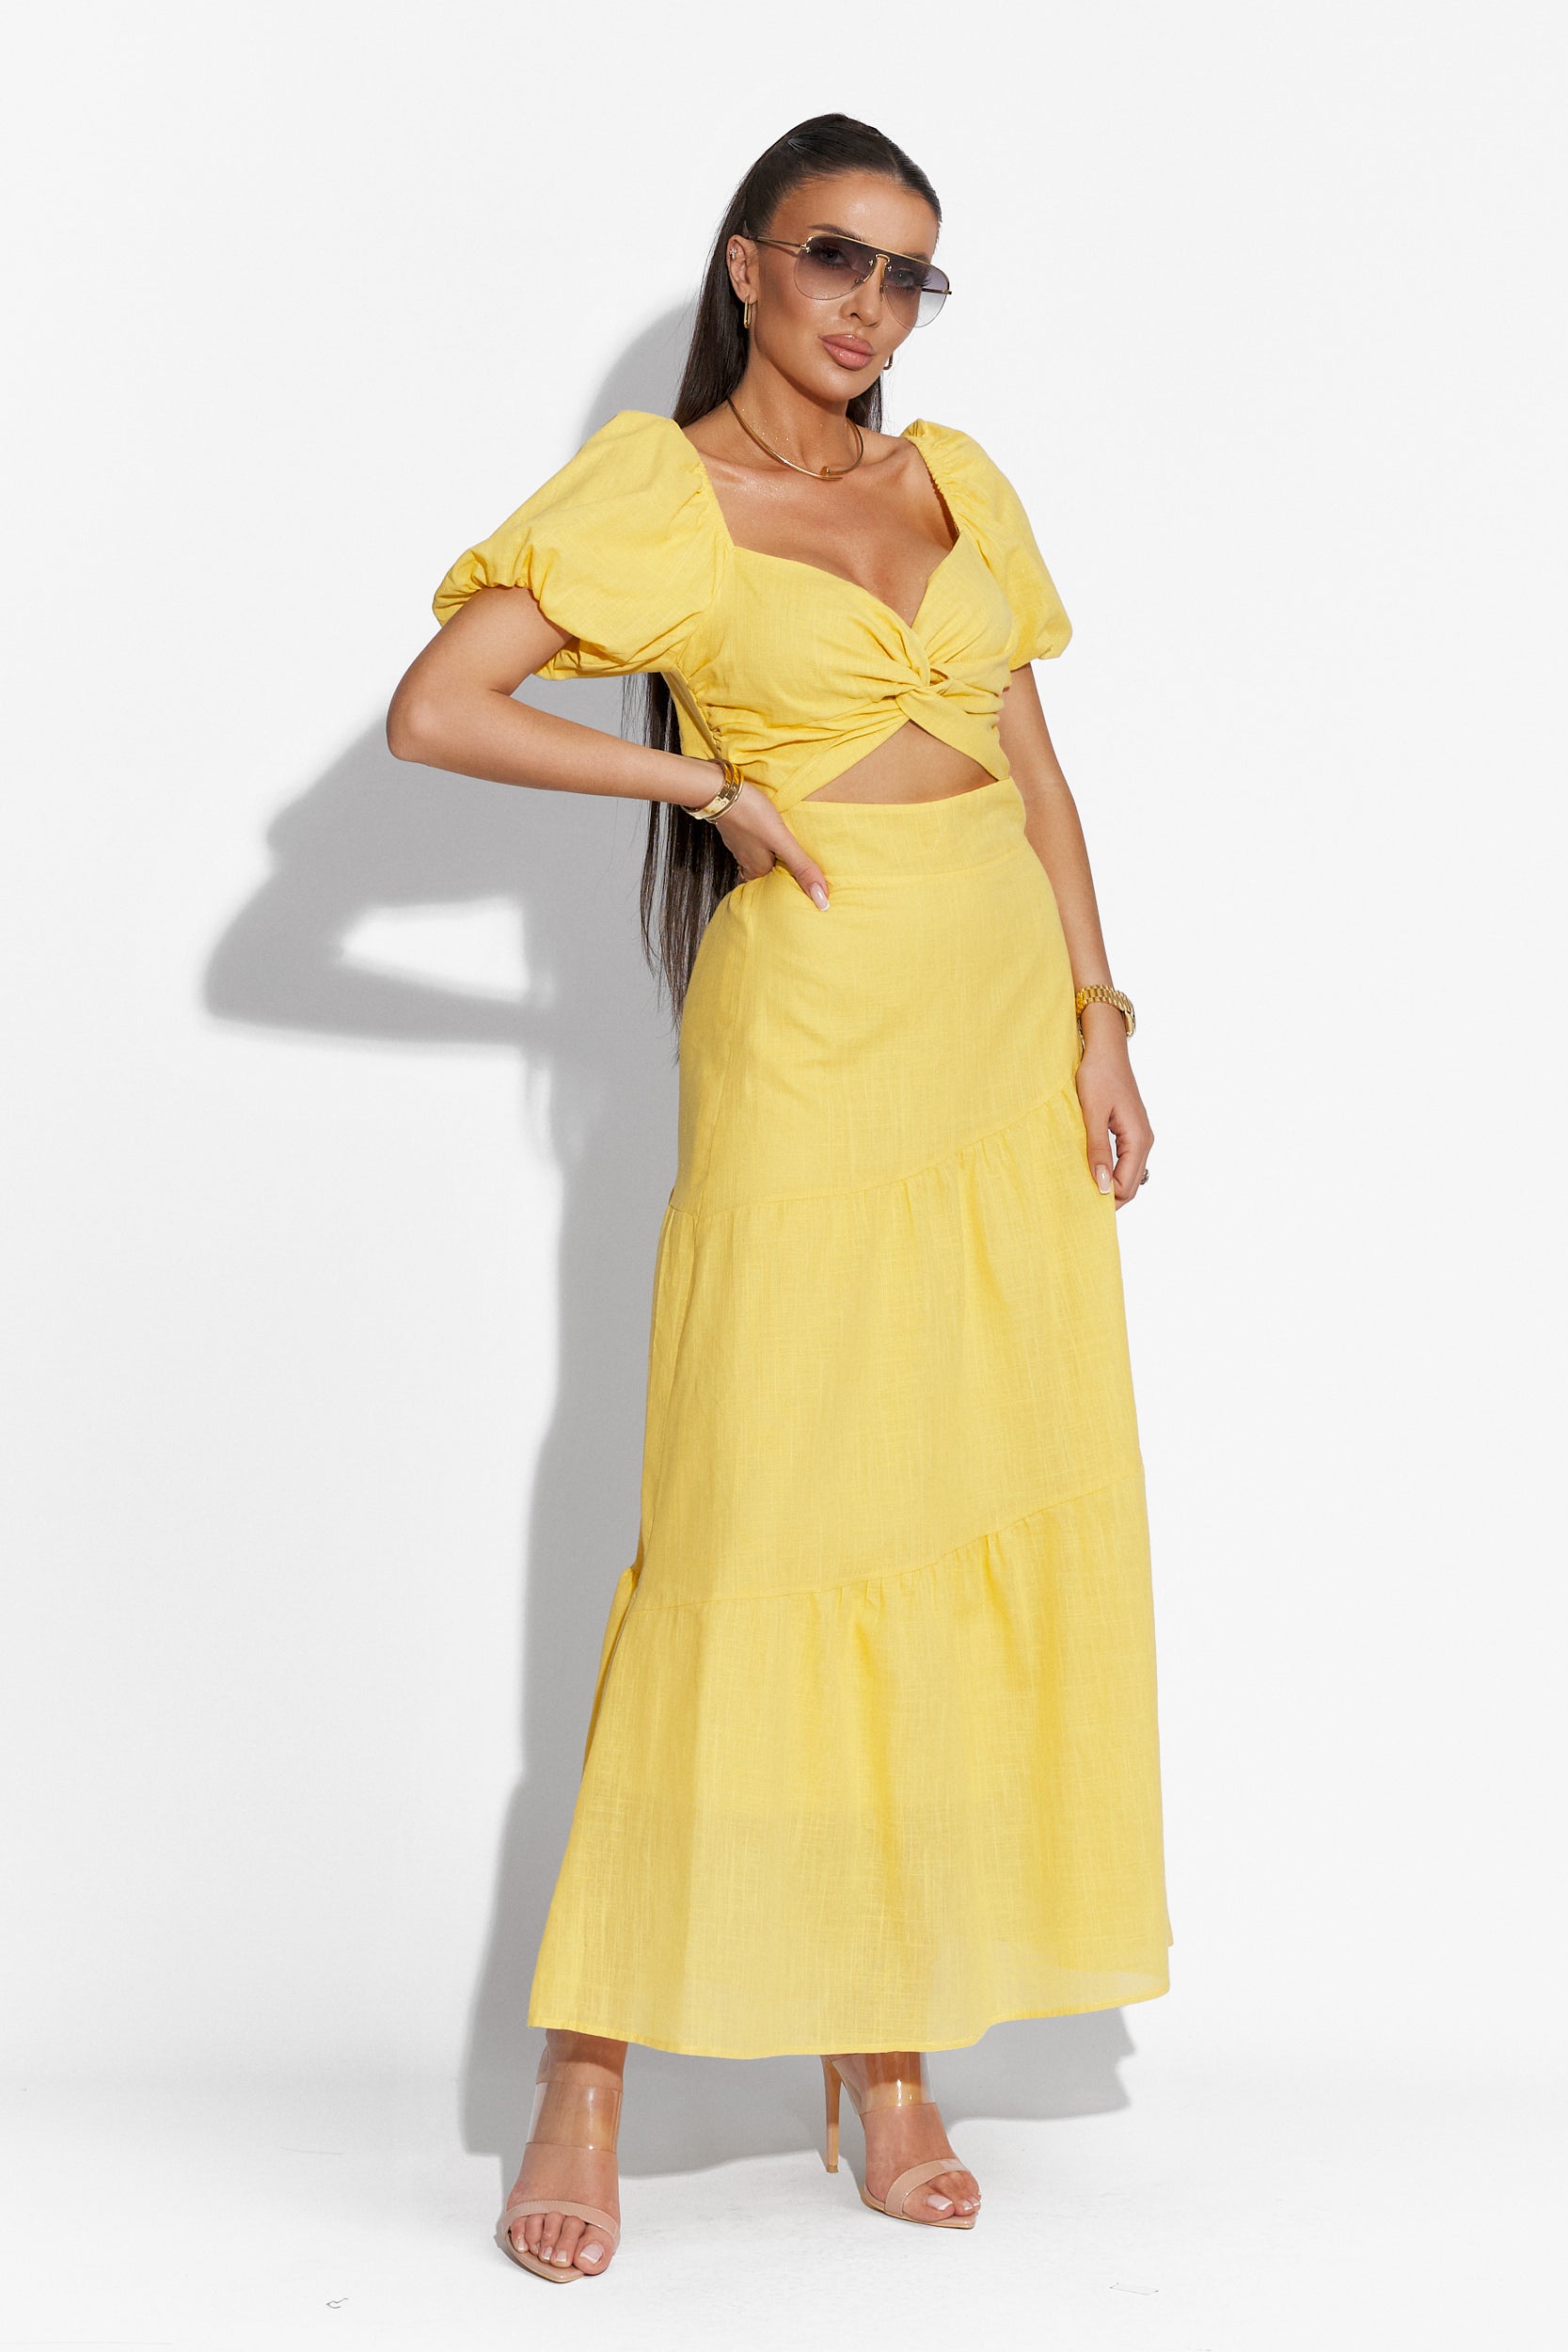 Mosysca Bogas hosszú sárga női ruha